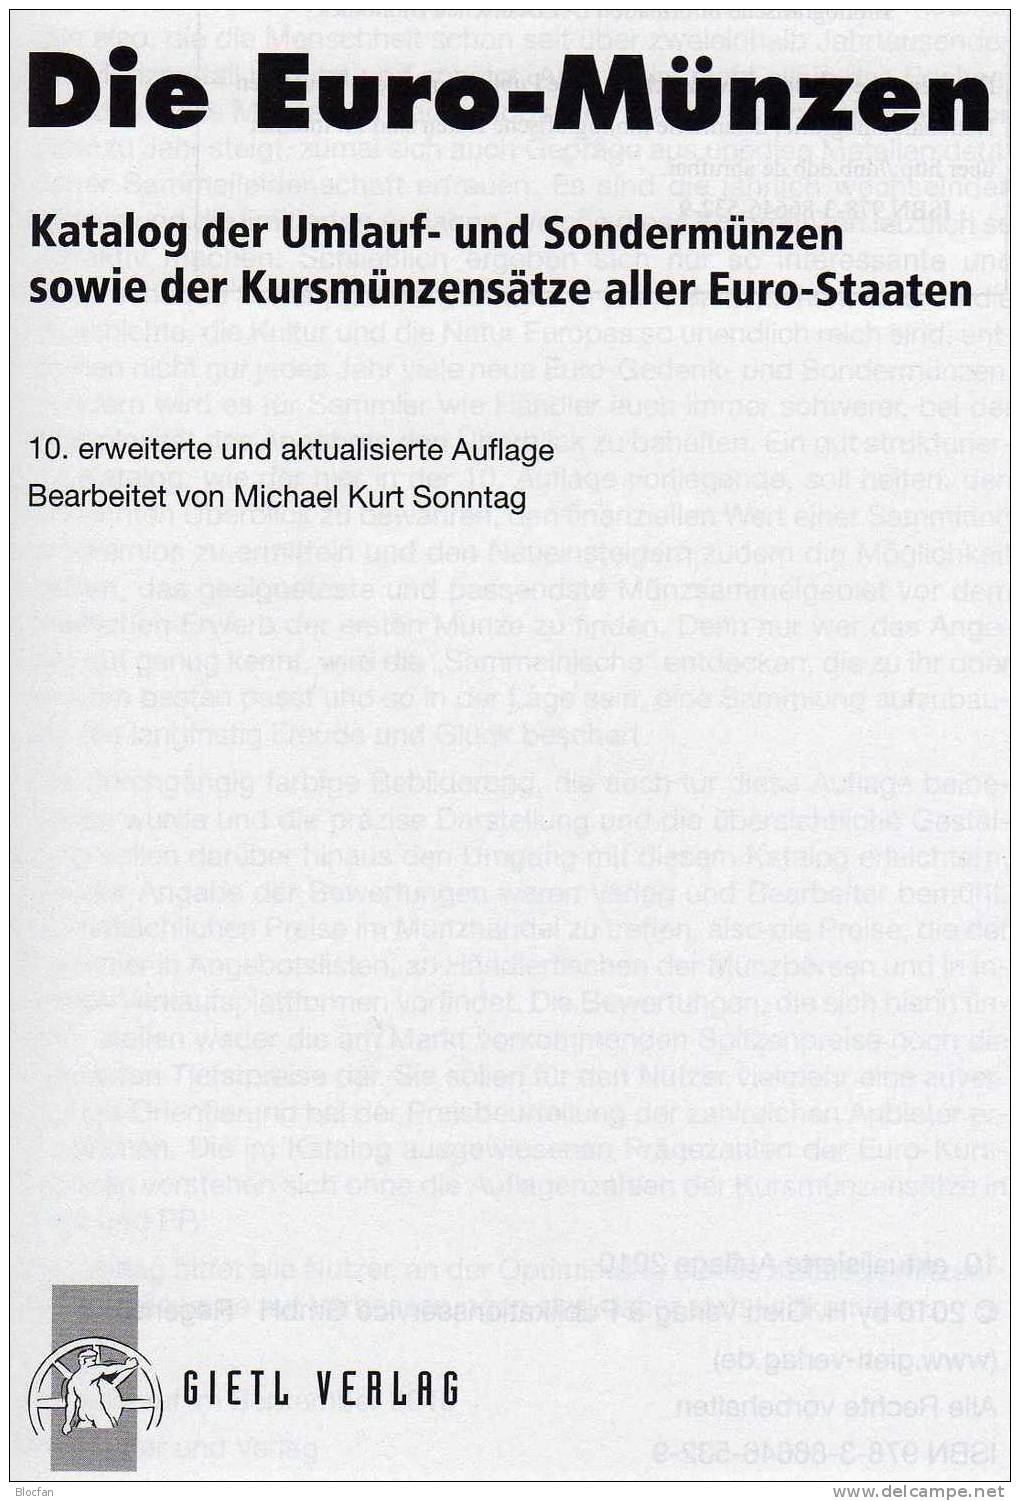 Die EURO-Münzen Katalog 2011 Neu 20€ Deutschland Und Euroländer Für Numis-Briefe, Numisblätter Neueste Auflage Von Gietl - Gebraucht